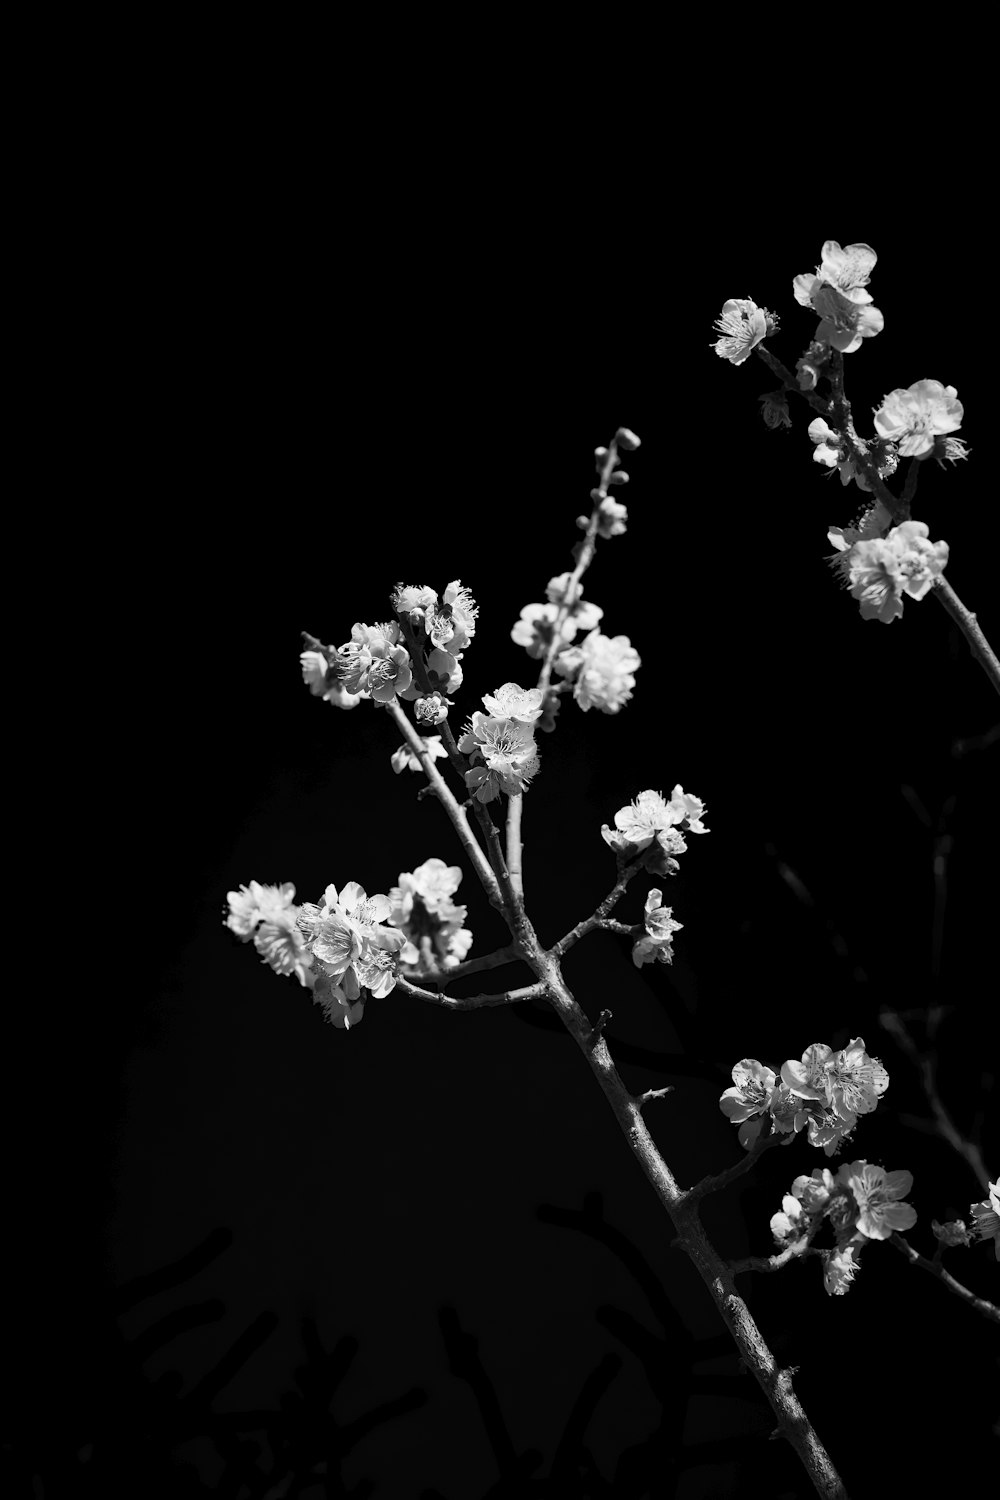 Una foto en blanco y negro de unas flores